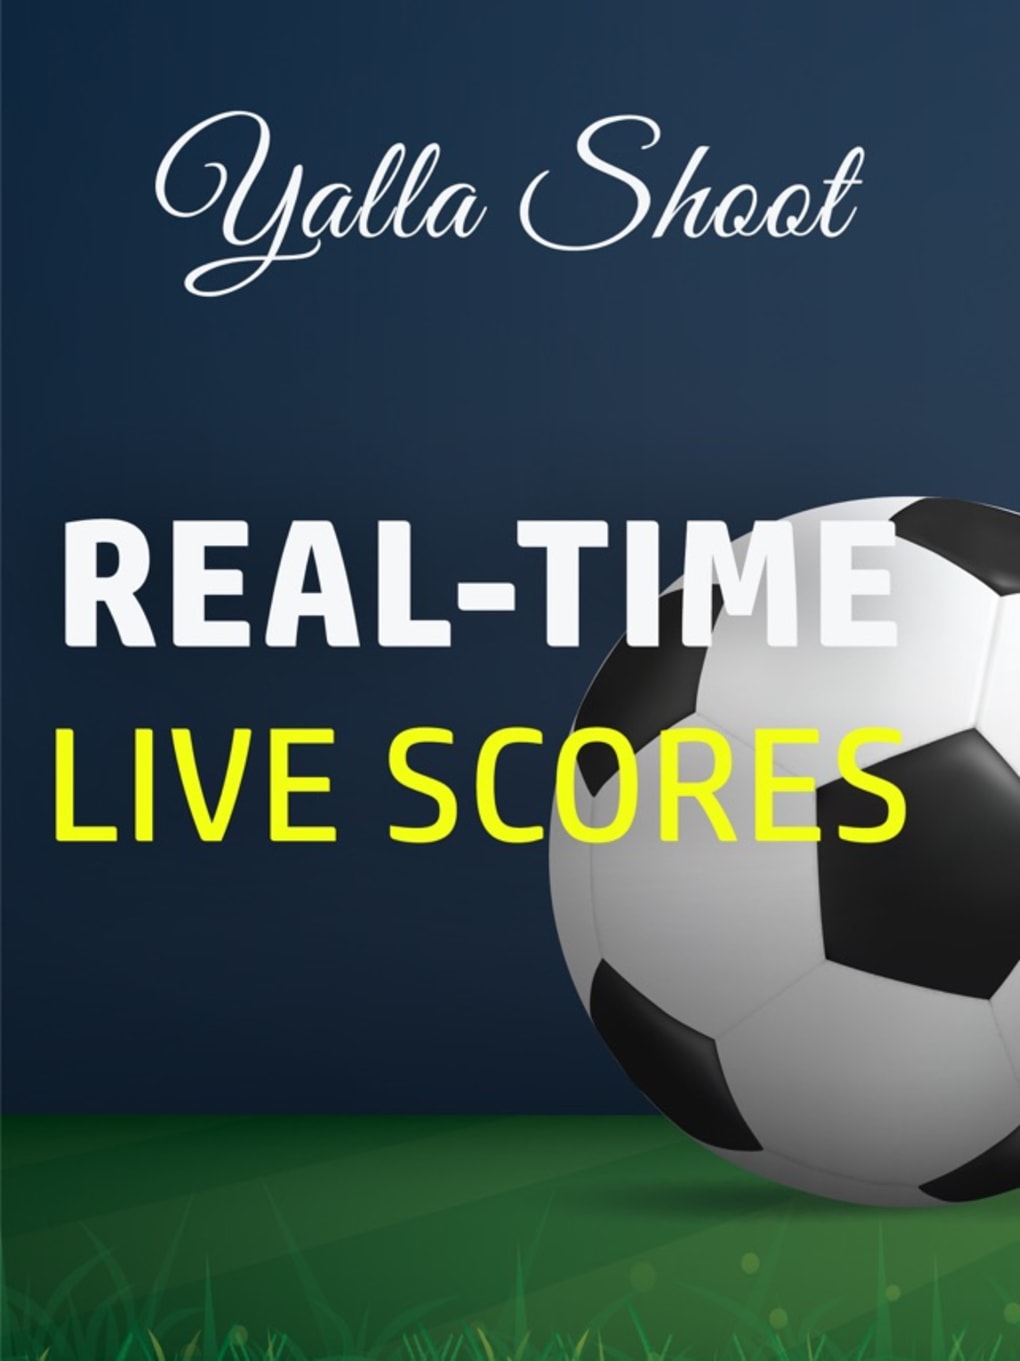 yalla shoot live fifa world cup